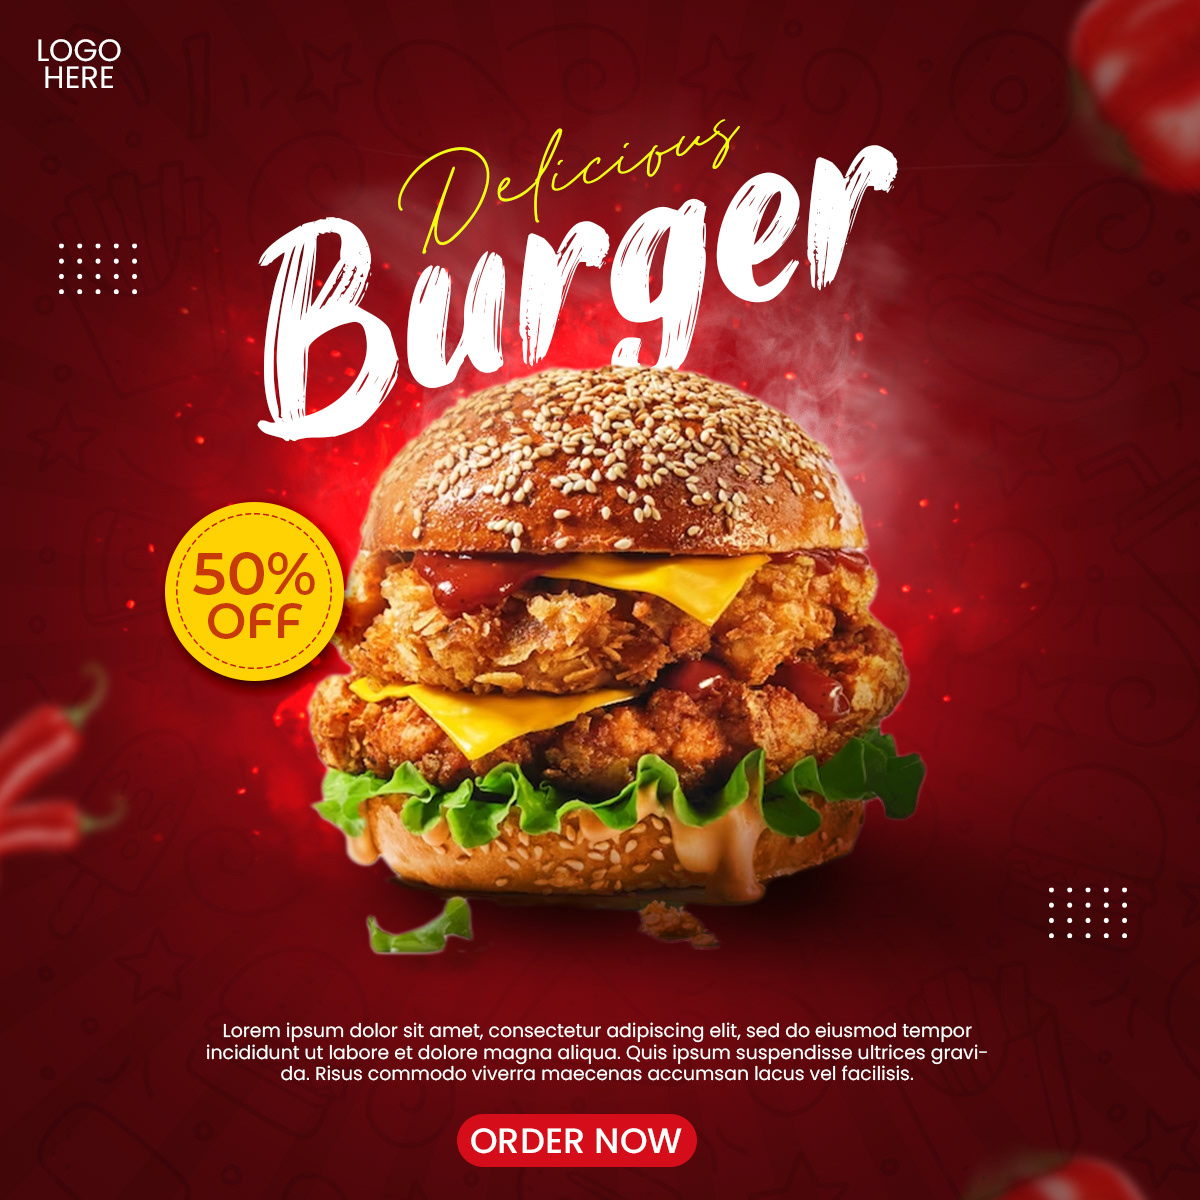 Food  restaurant Advertising  marketing   Social media post visual identity Socialmedia Fast food burger hamburguer